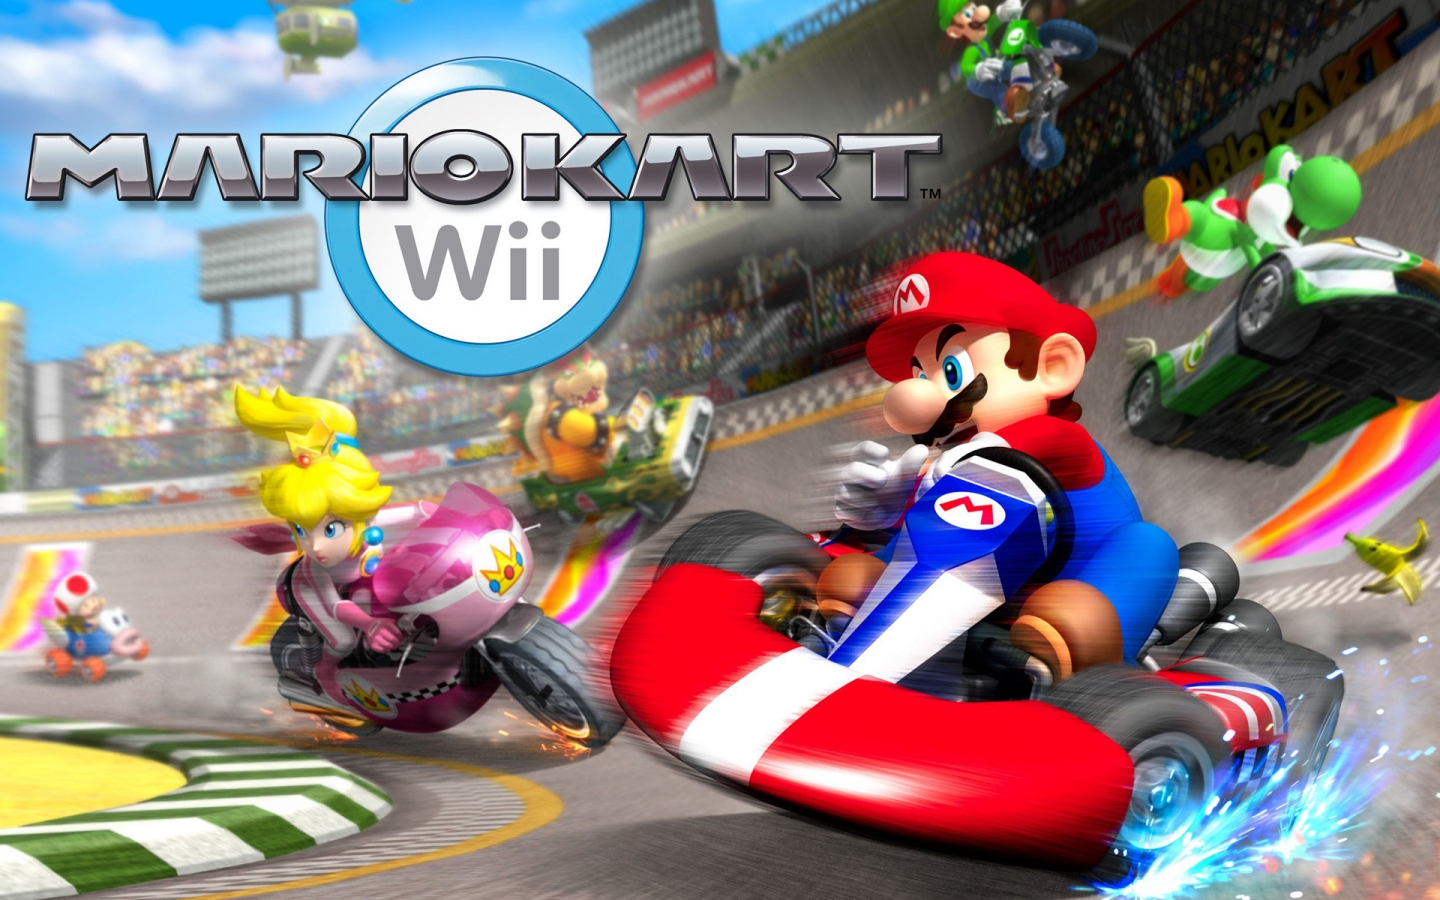 Mariokart for 1440 x 900 widescreen resolution